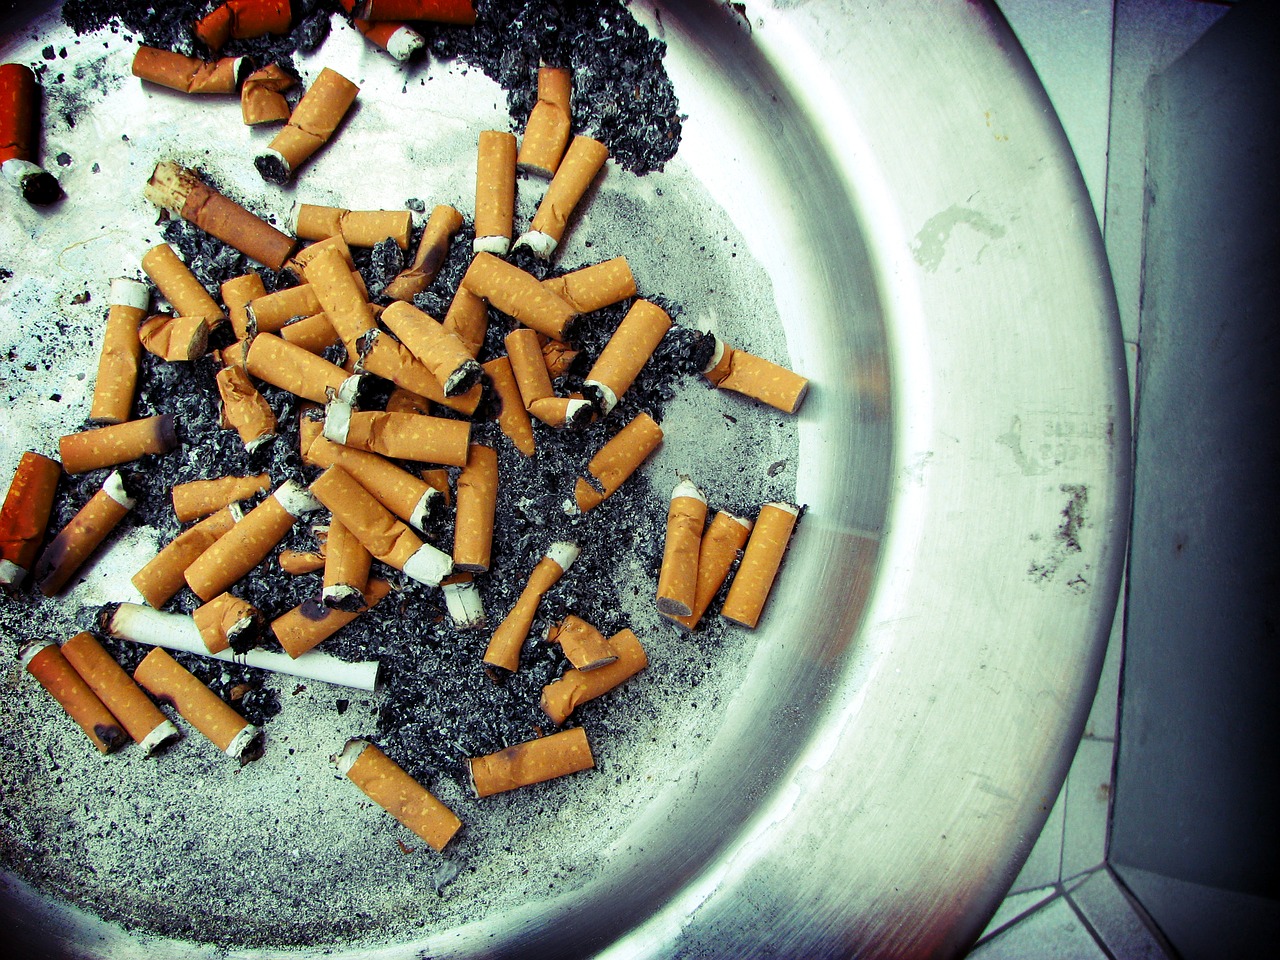 tobacco nicotine habit free photo